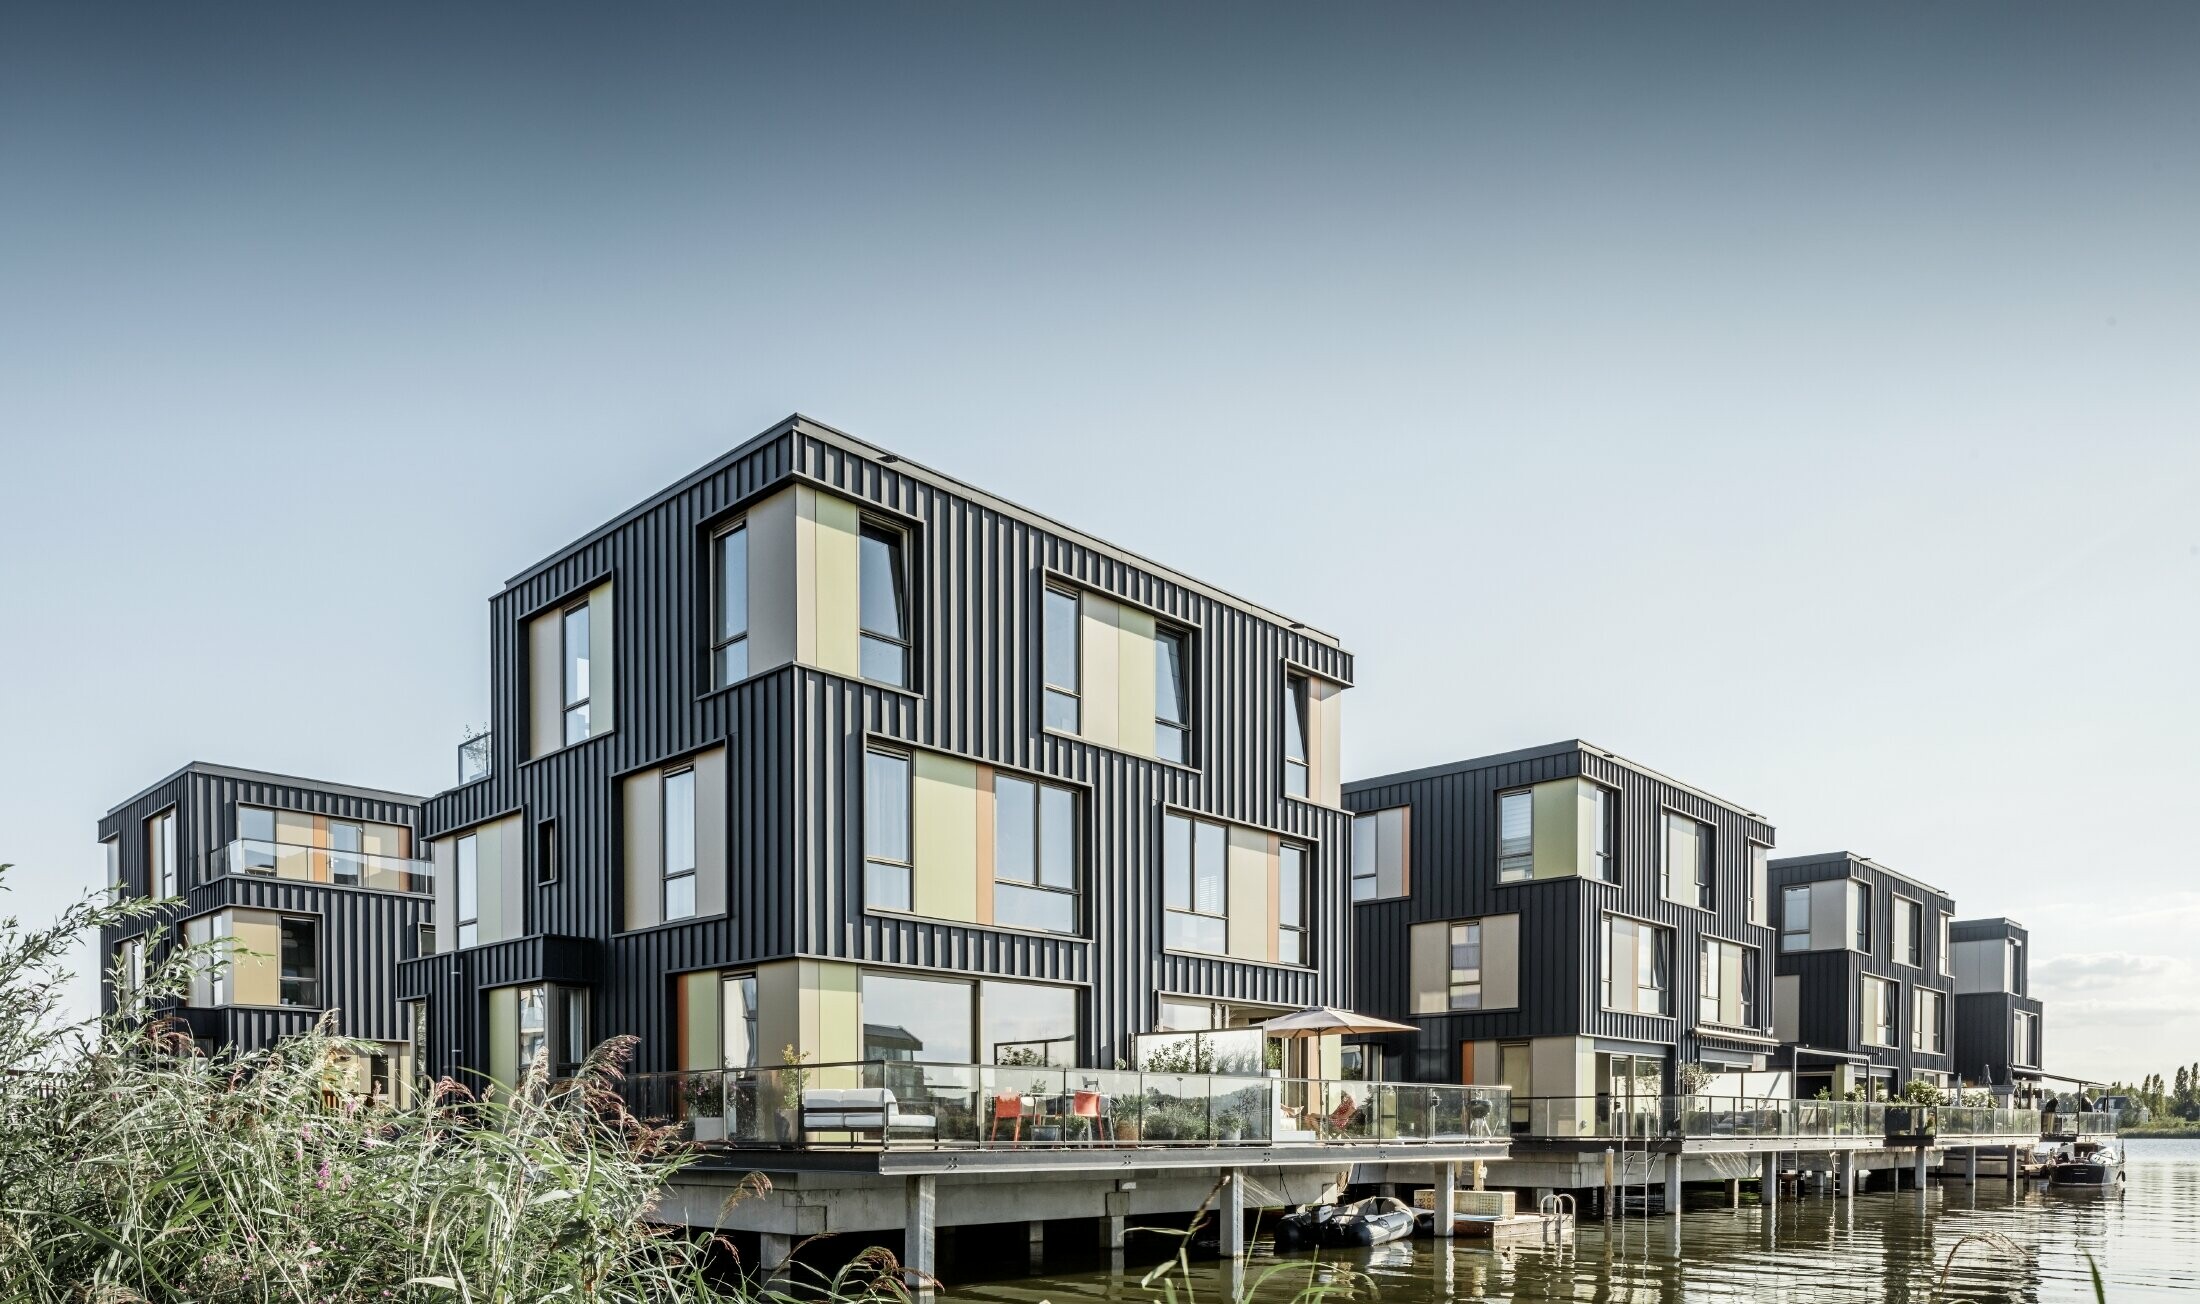 Nytt bostadsområde med tvåfamiljshus vid en sjö i Amsterdam. Husen kläddes med Prefalz från PREFA i P.10 antracit.